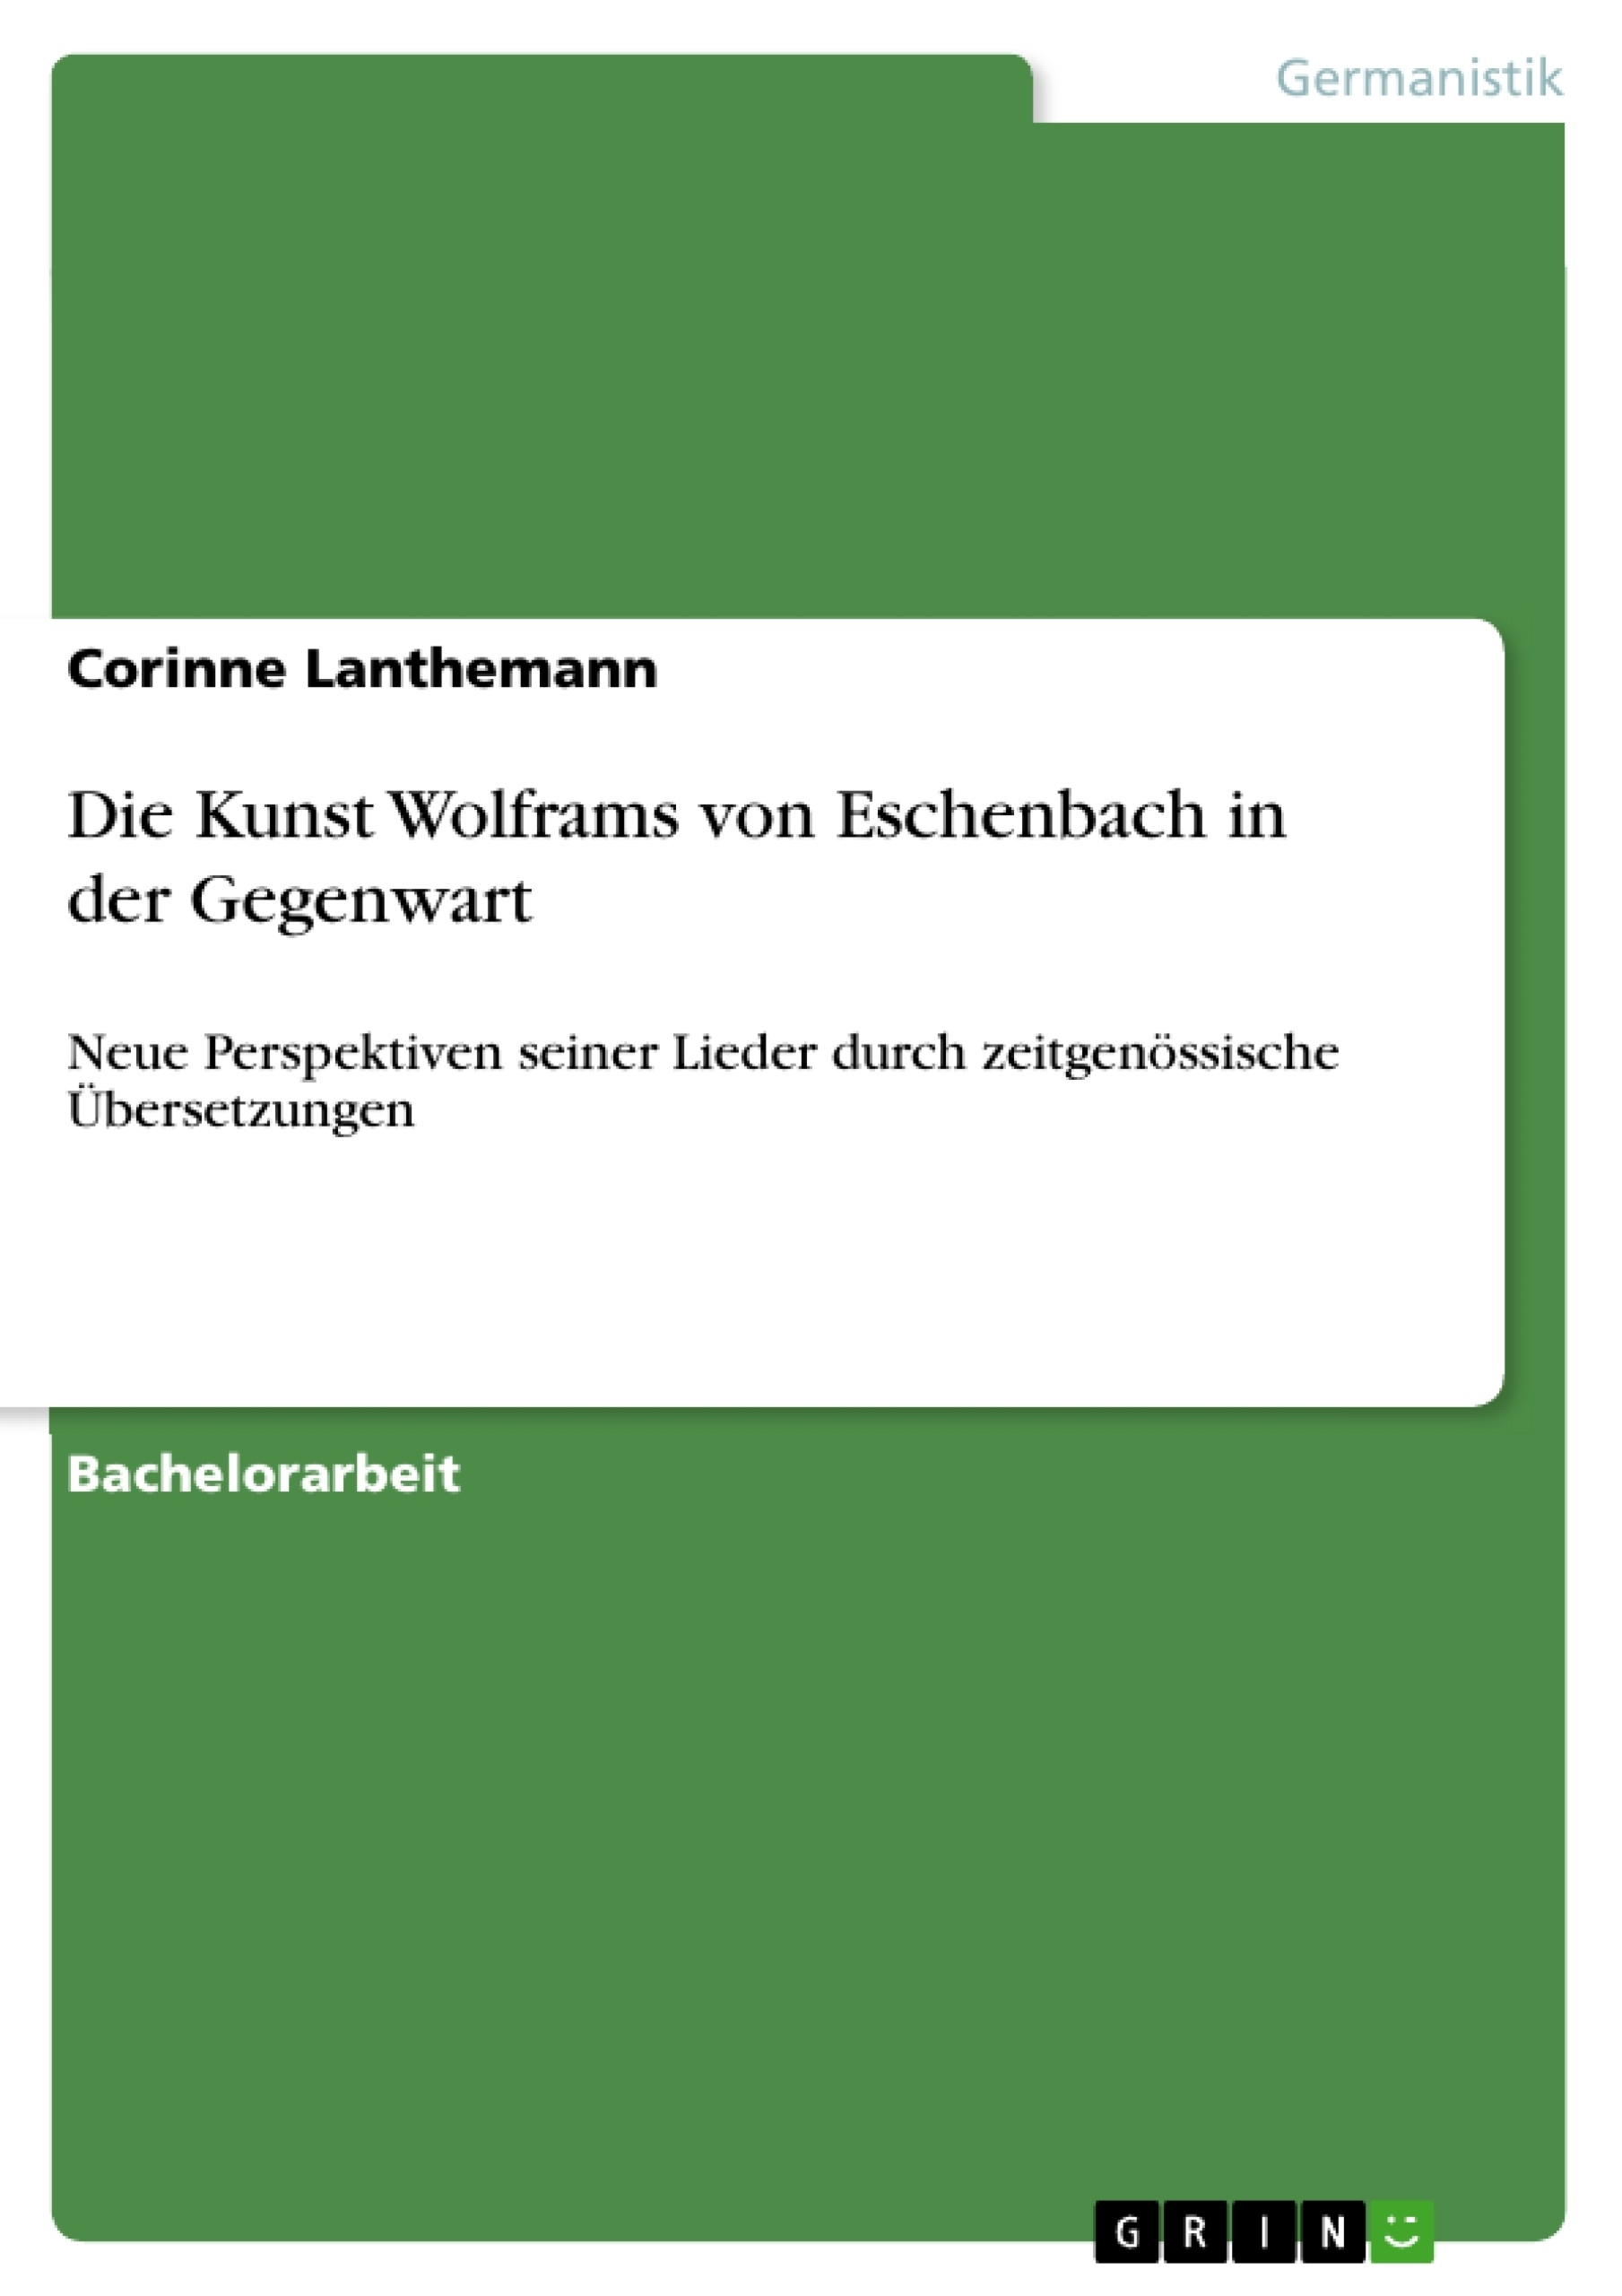 Title: Die Kunst Wolframs von Eschenbach in der Gegenwart